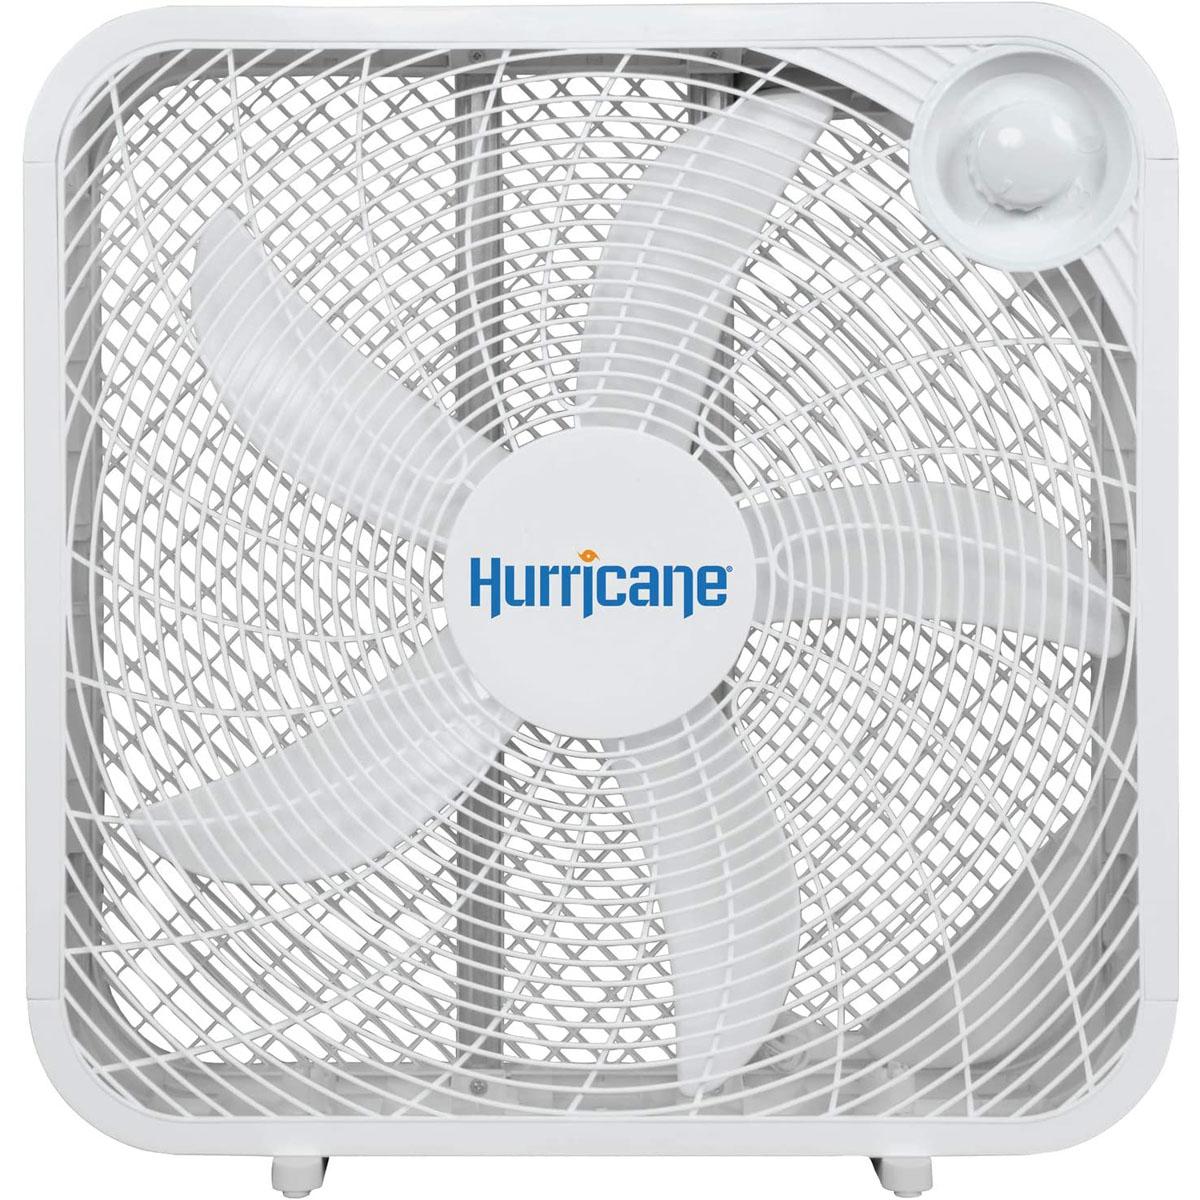 Hurricane 20in Box Fan for $18.86